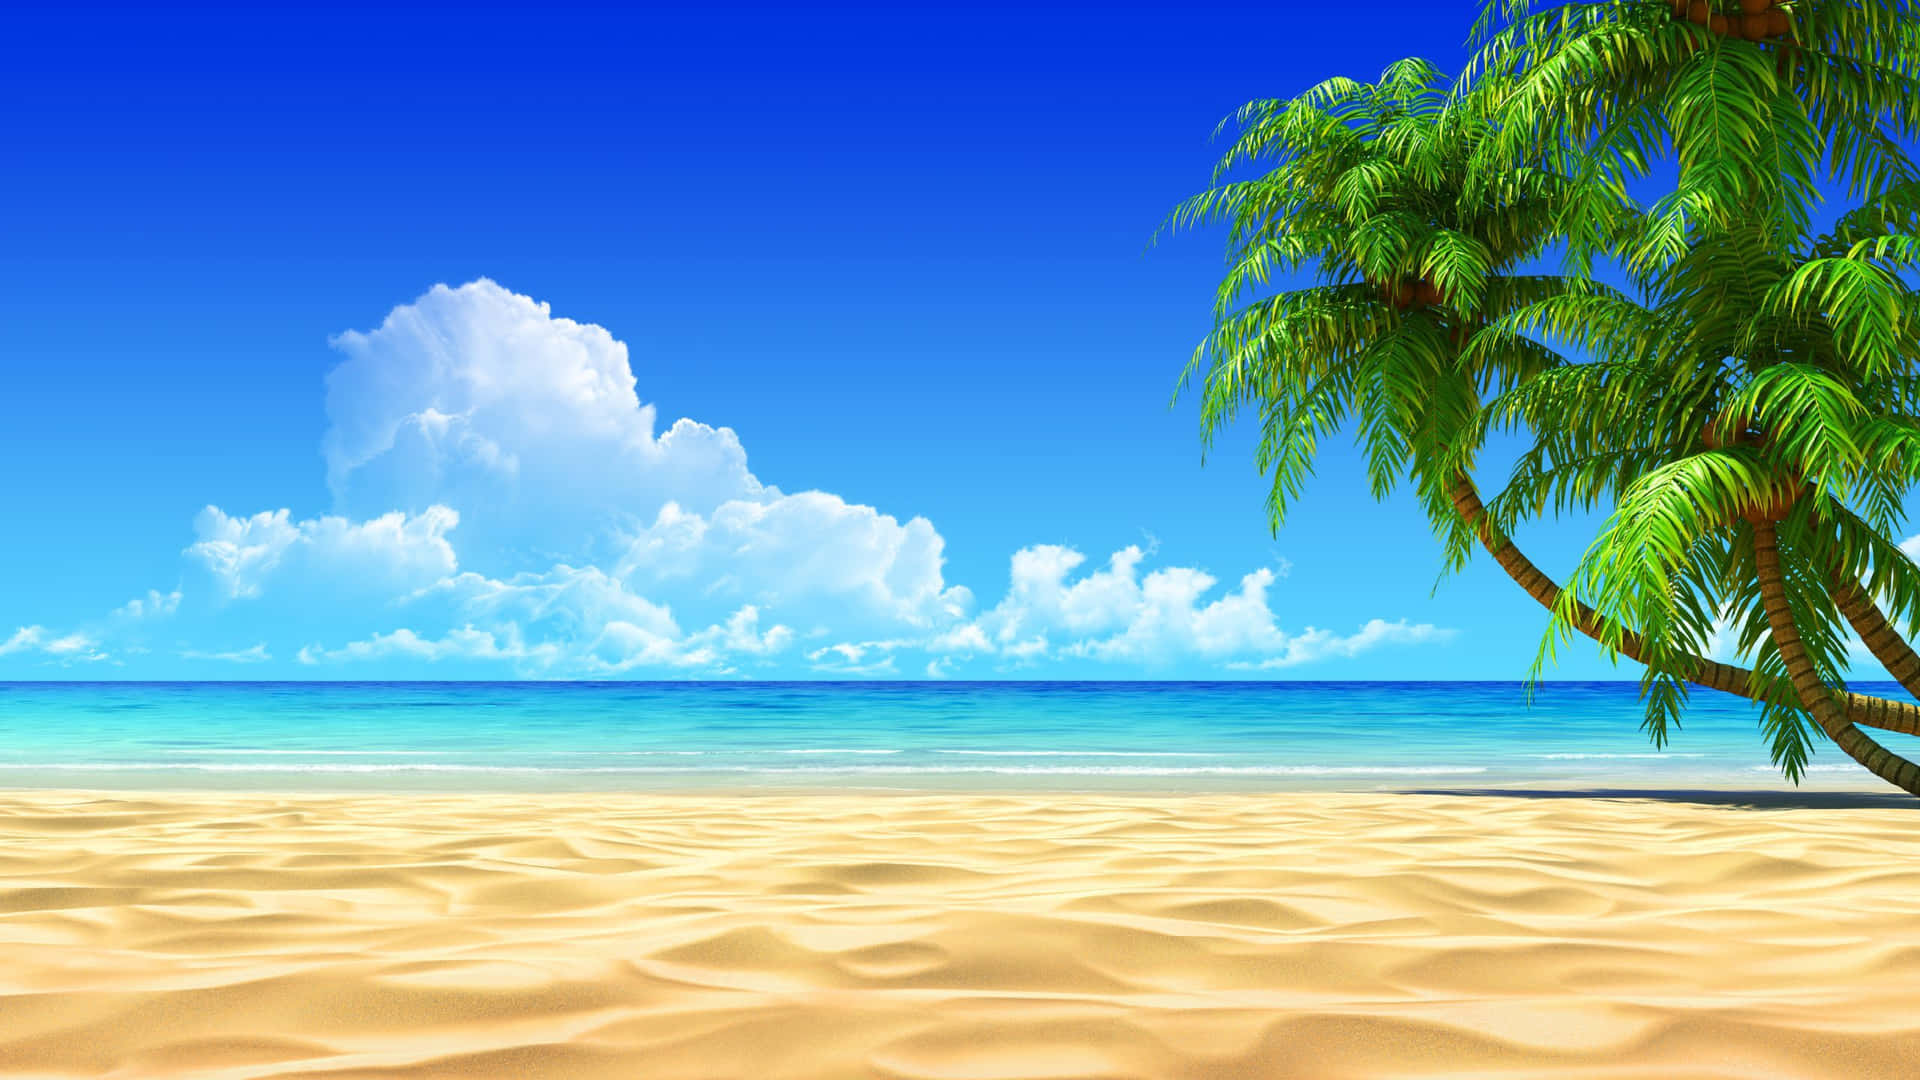 Vistasincomparables: Sienta Las Brisas Relajantes En Palm Beach. Fondo de pantalla